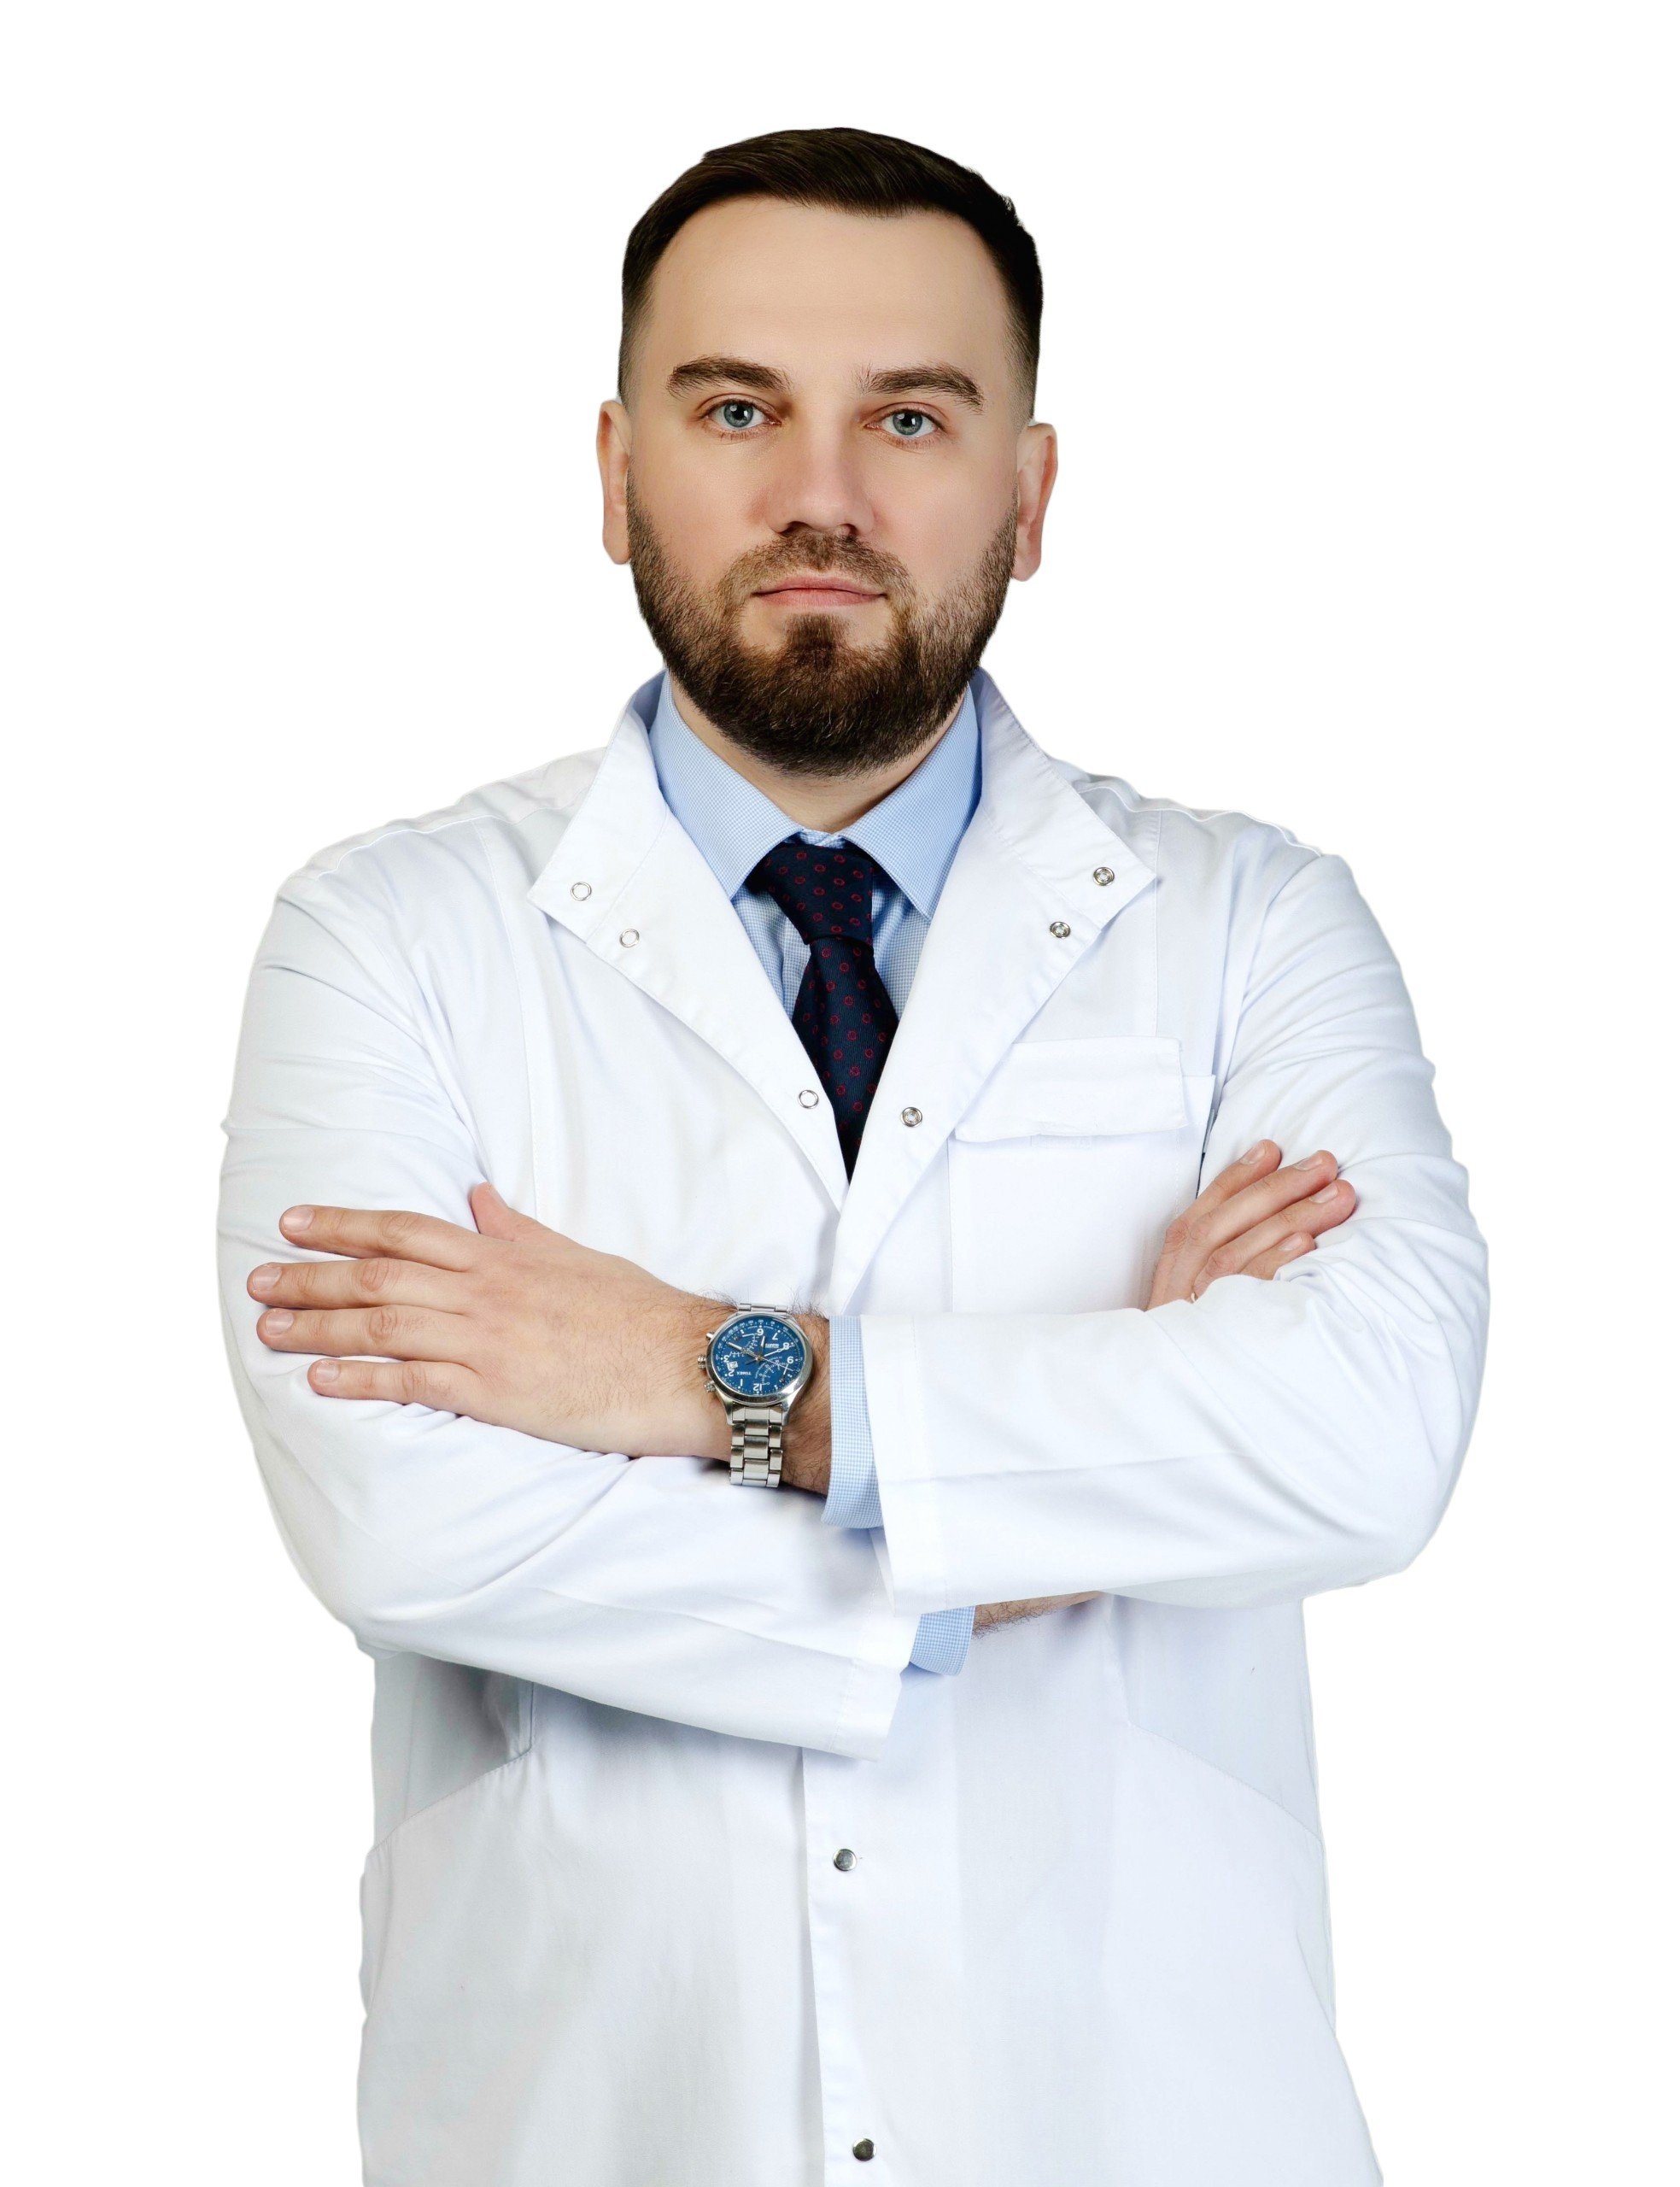 Bác sĩ Chernov Evgenii